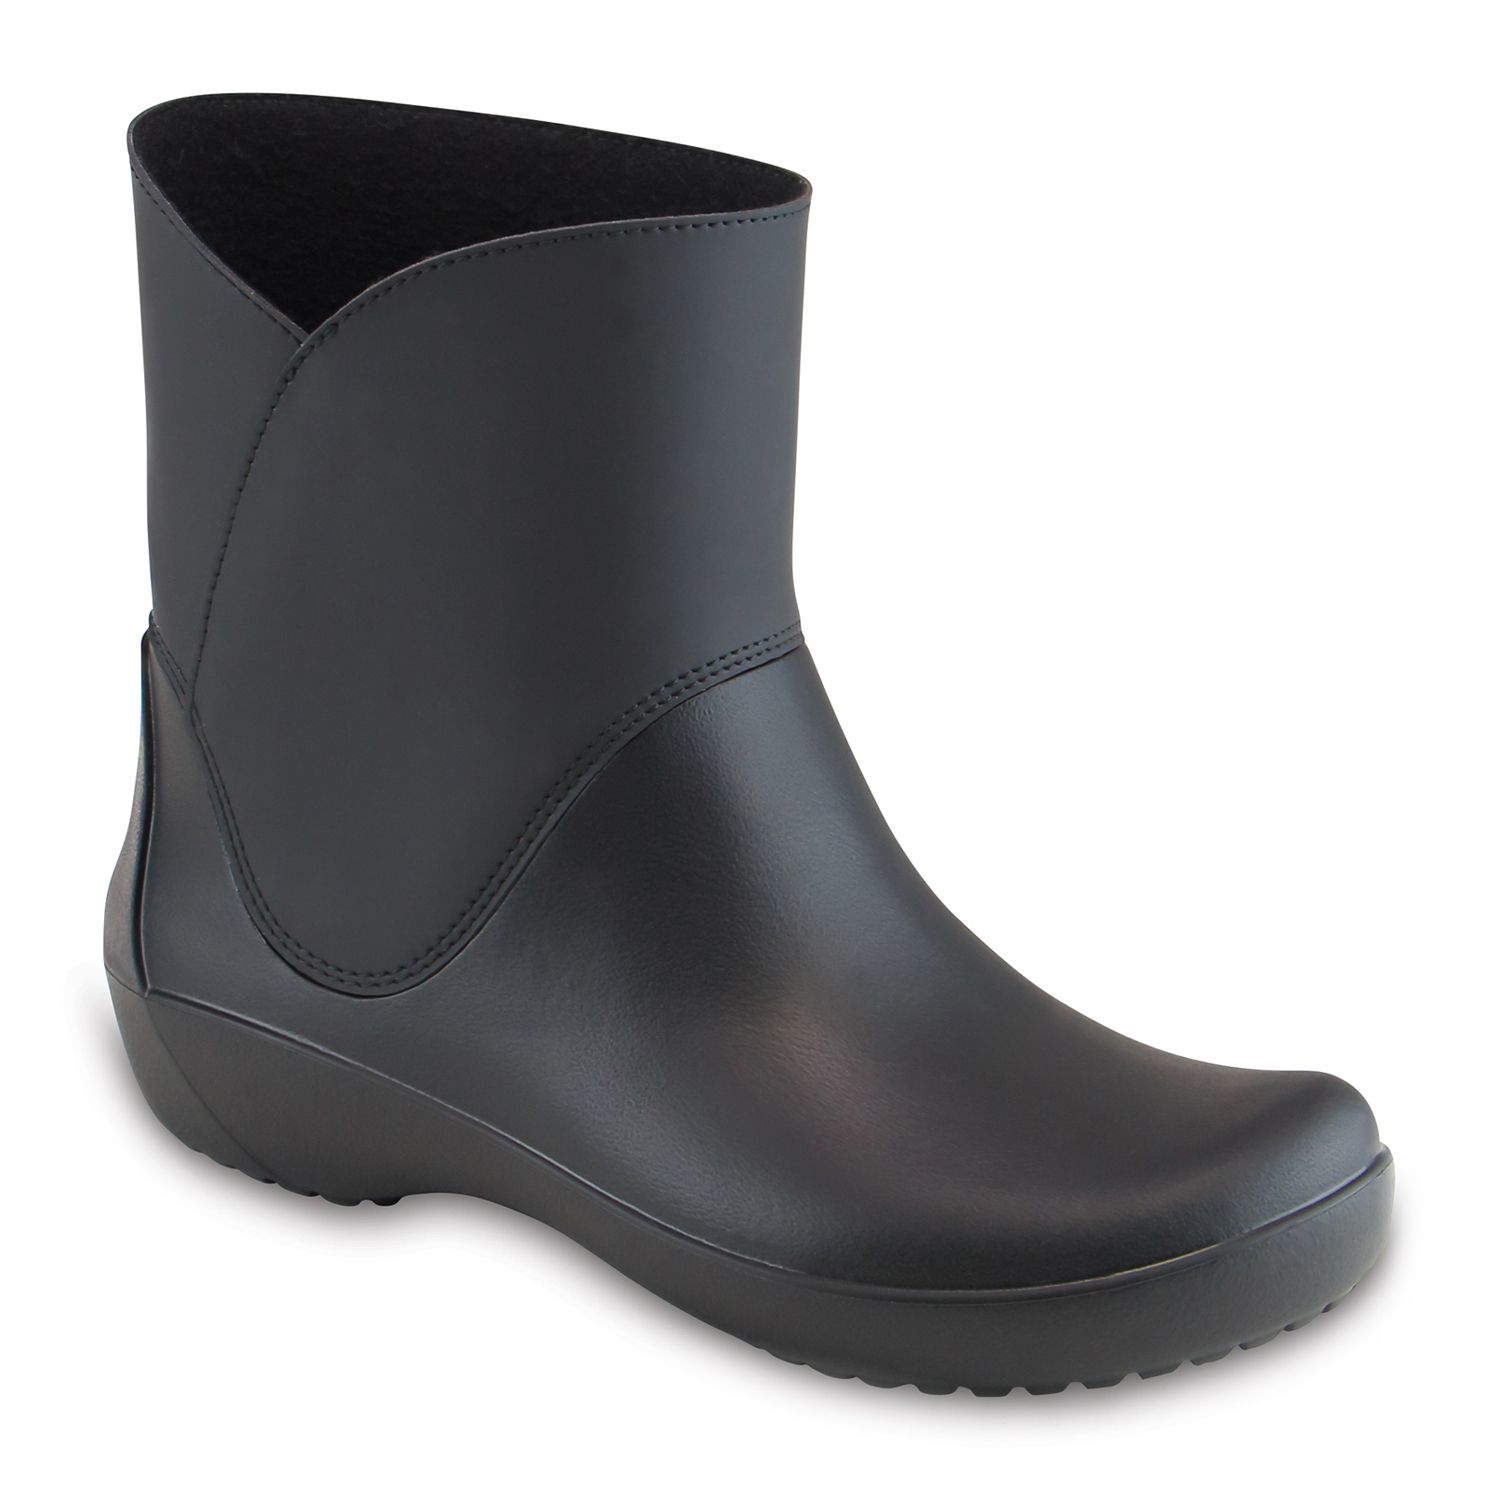 rainfloe crocs rain boots